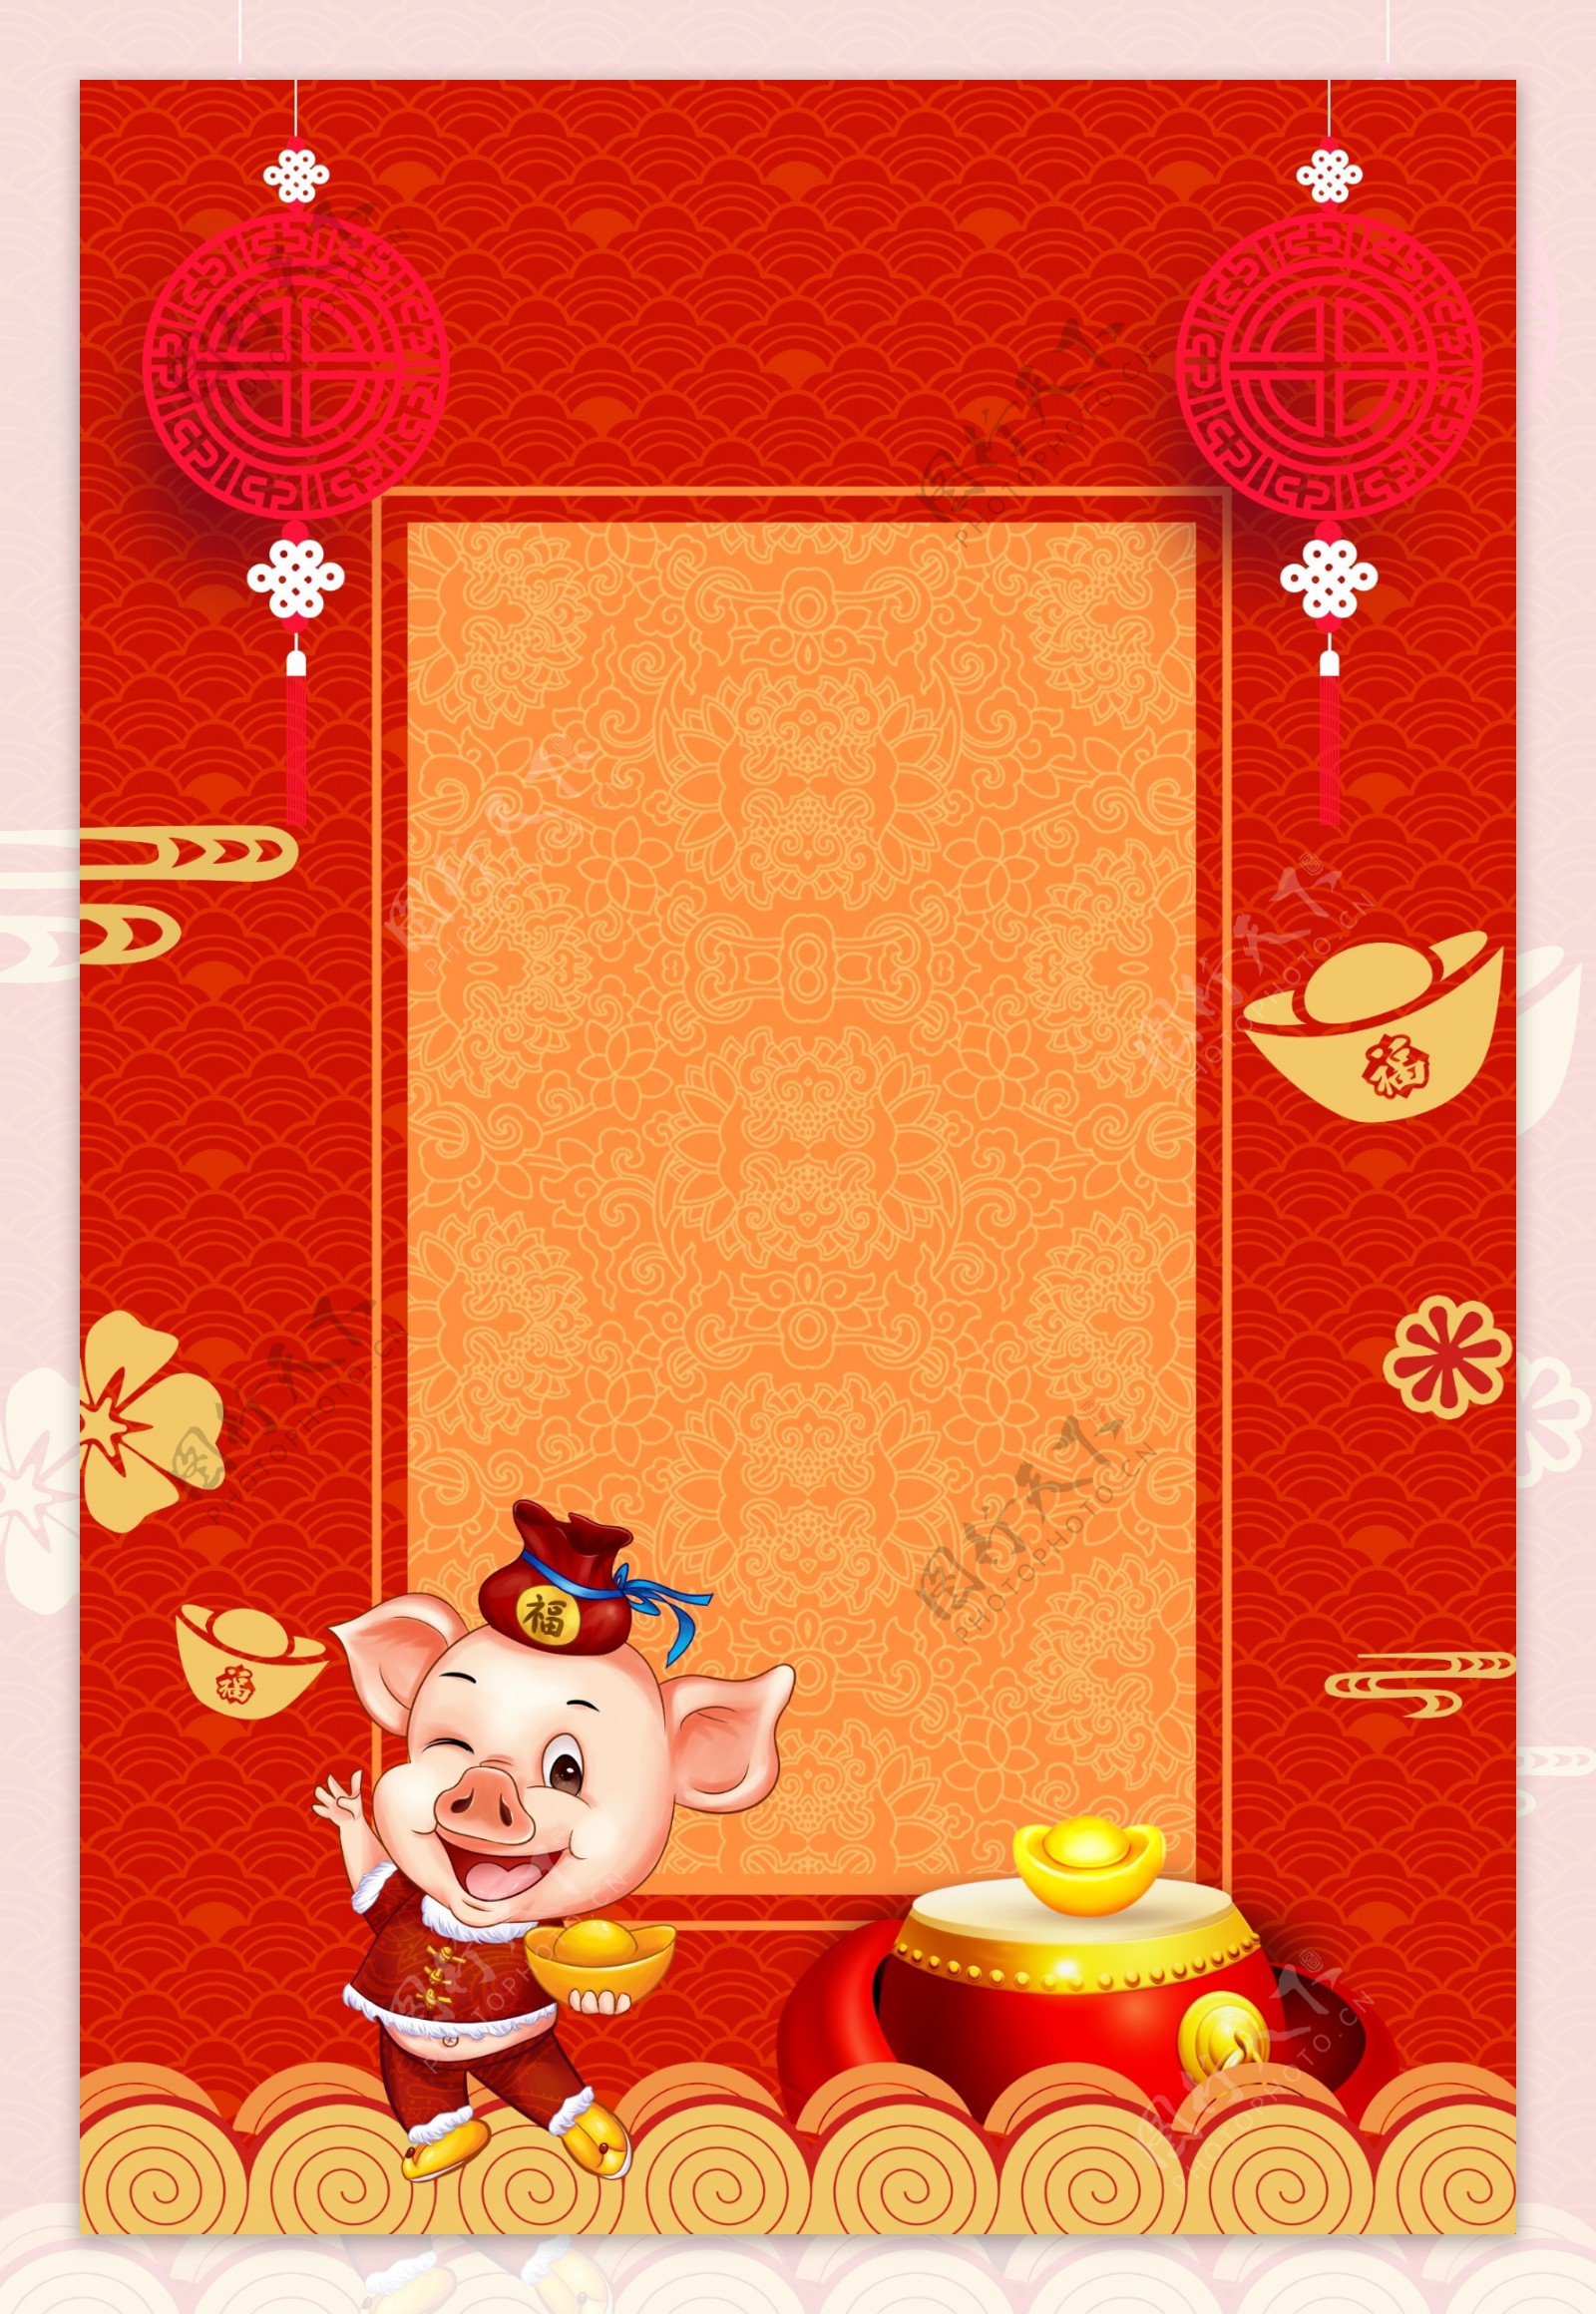 中国风猪年新年背景素材